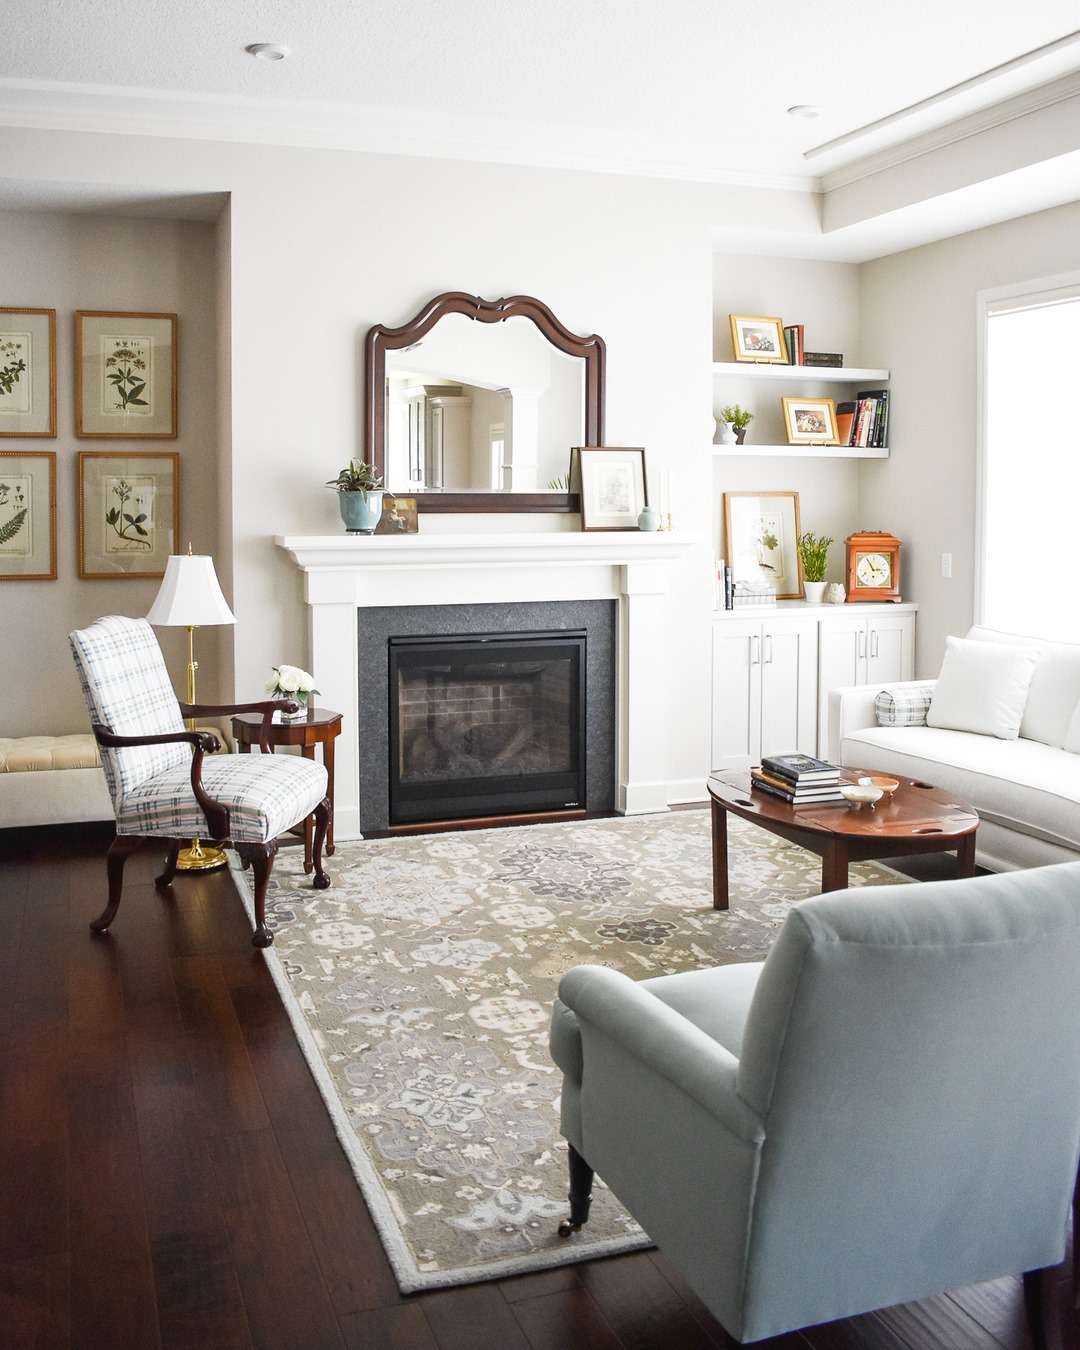 Uma sala de estar com uma combinação de móveis tradicionais e contemporâneos.